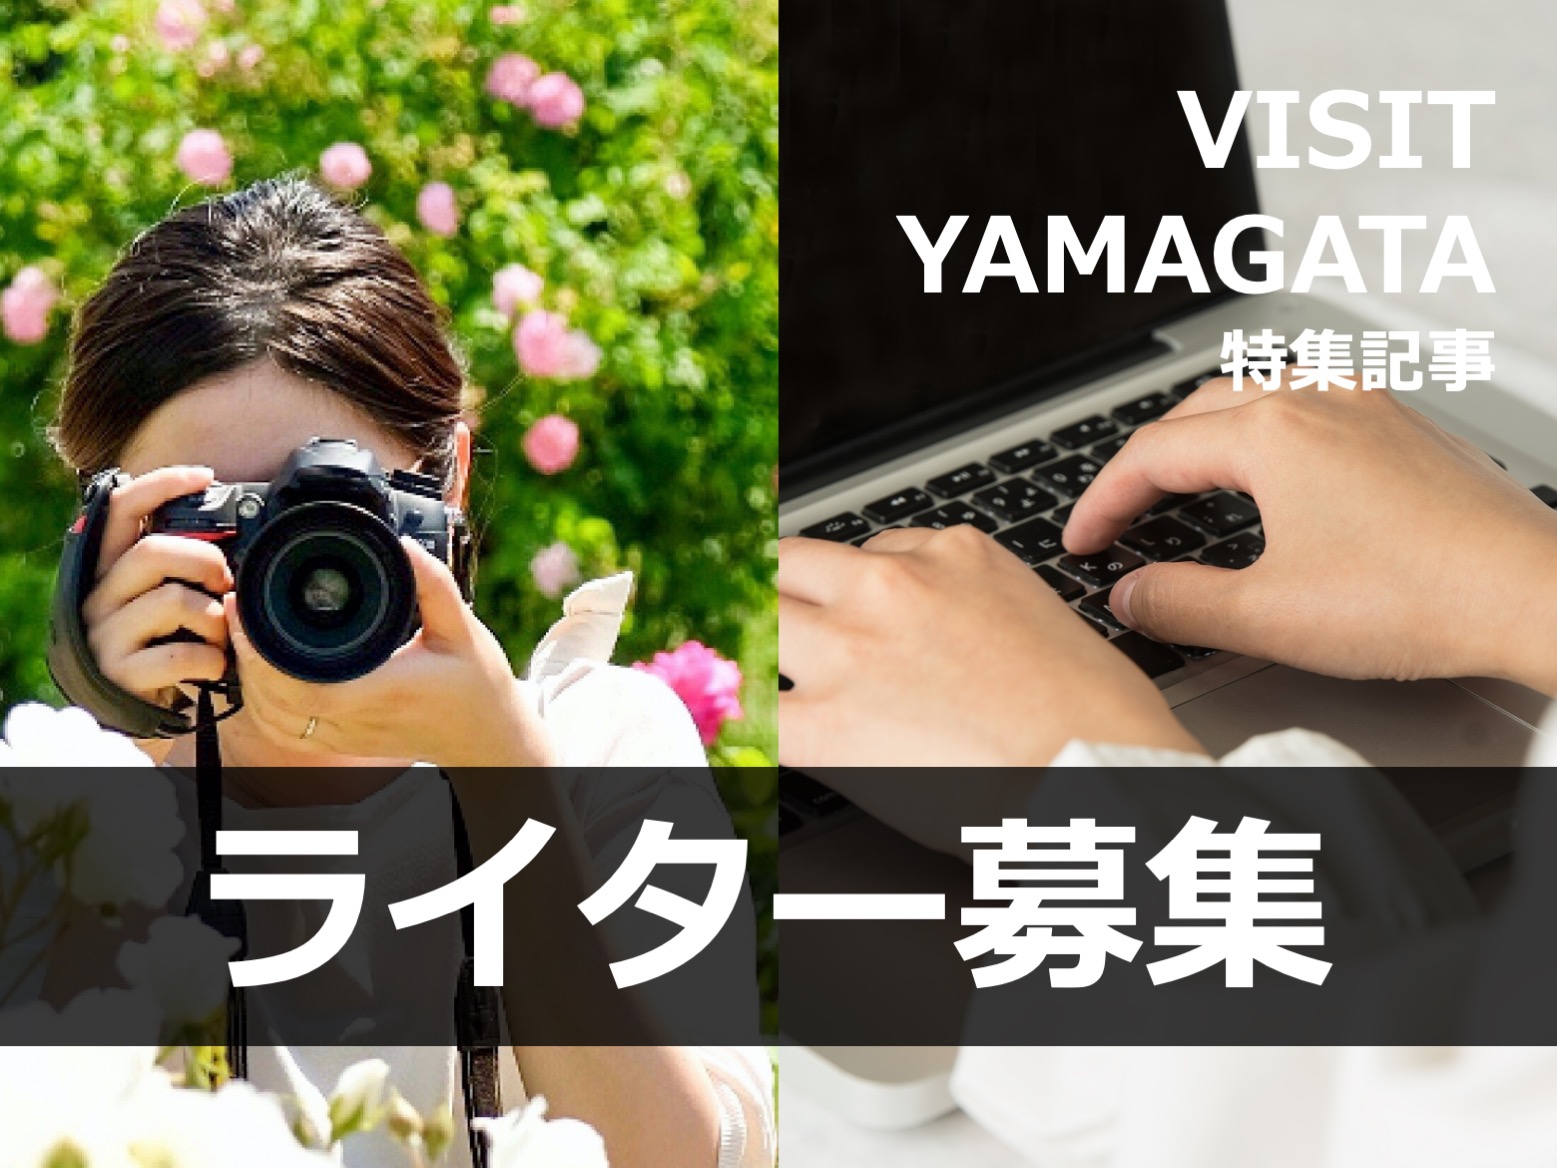 【募集】特集記事 ライター (VISIT YAMAGATA)  | 山形の魅力を一緒に発信していきませんか